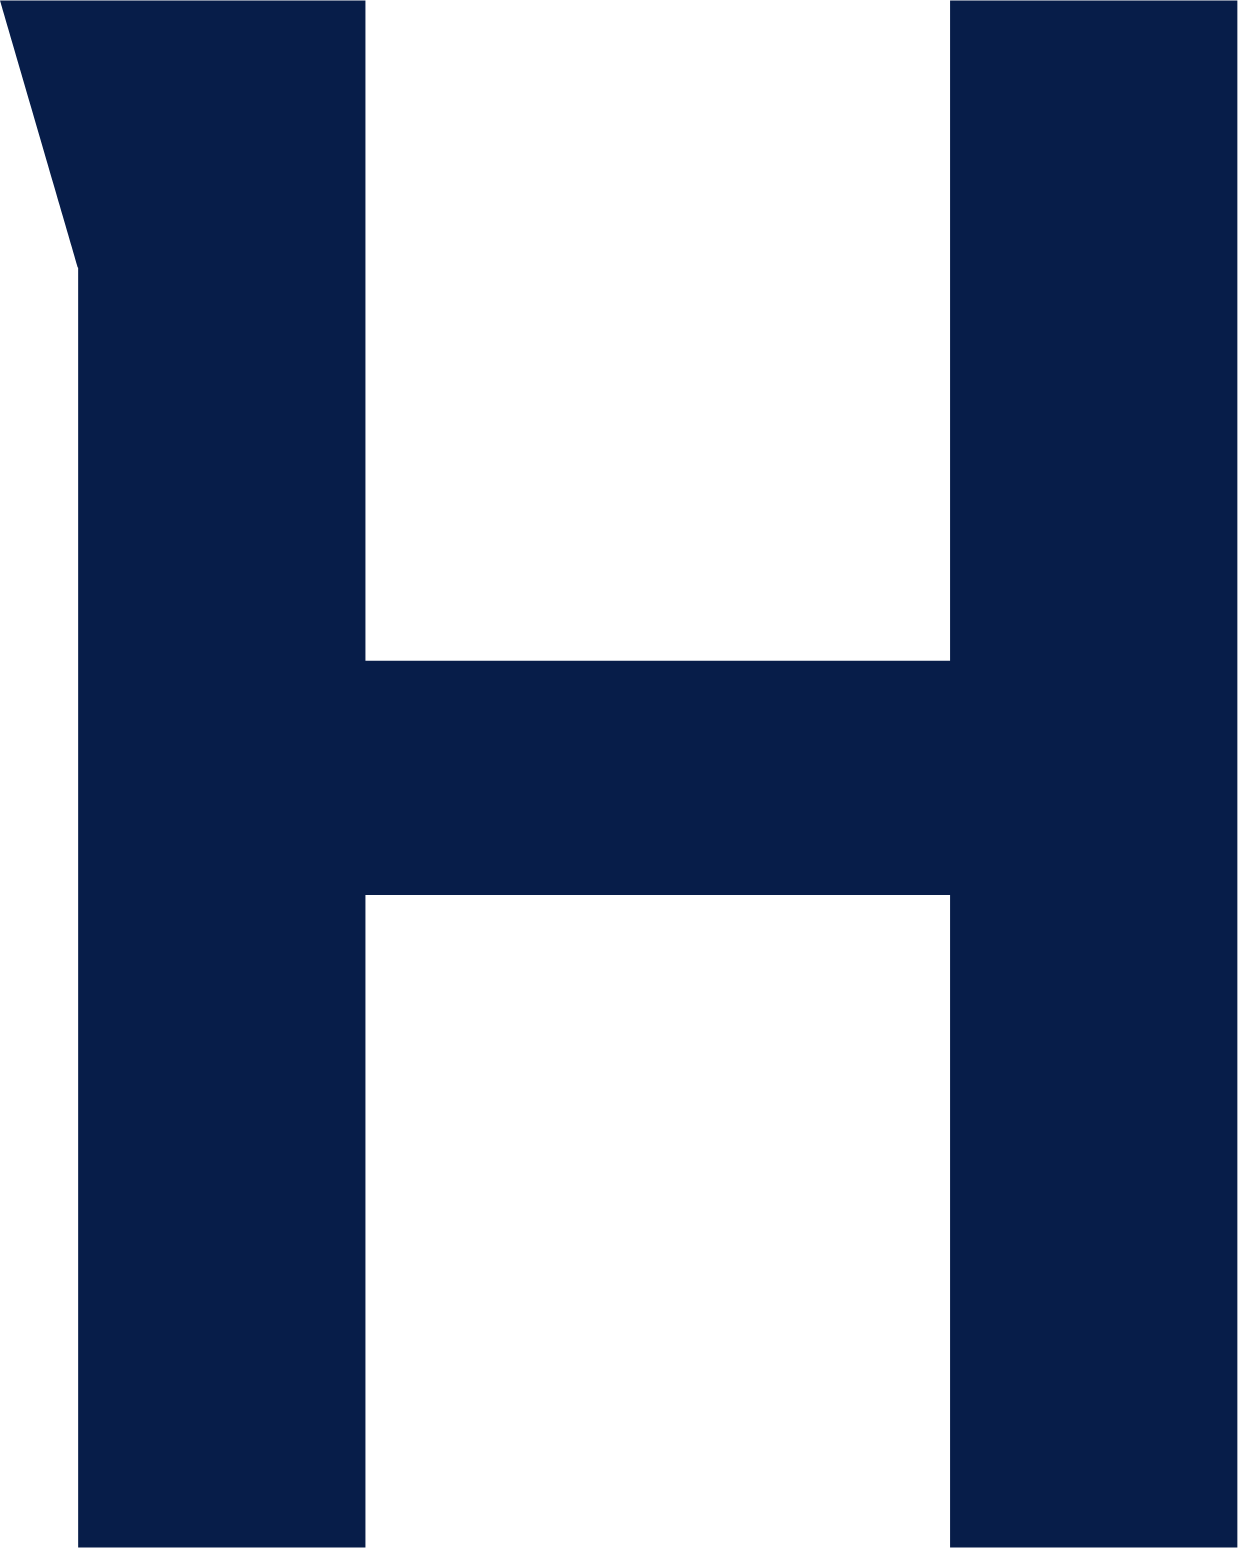 Hargreaves Lansdown logo (transparent PNG)